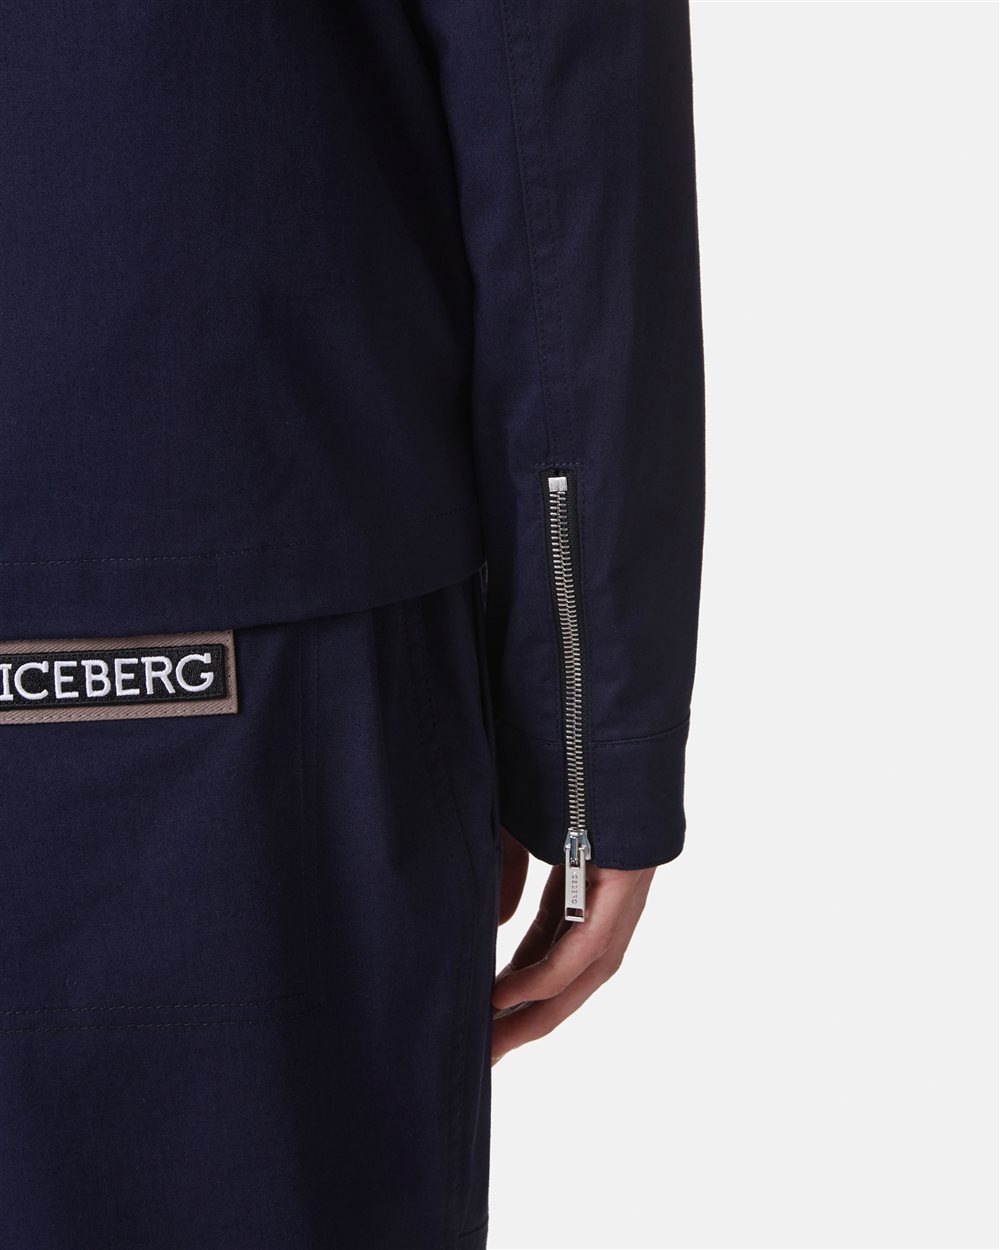 Giacca con logo - Iceberg - Official Website